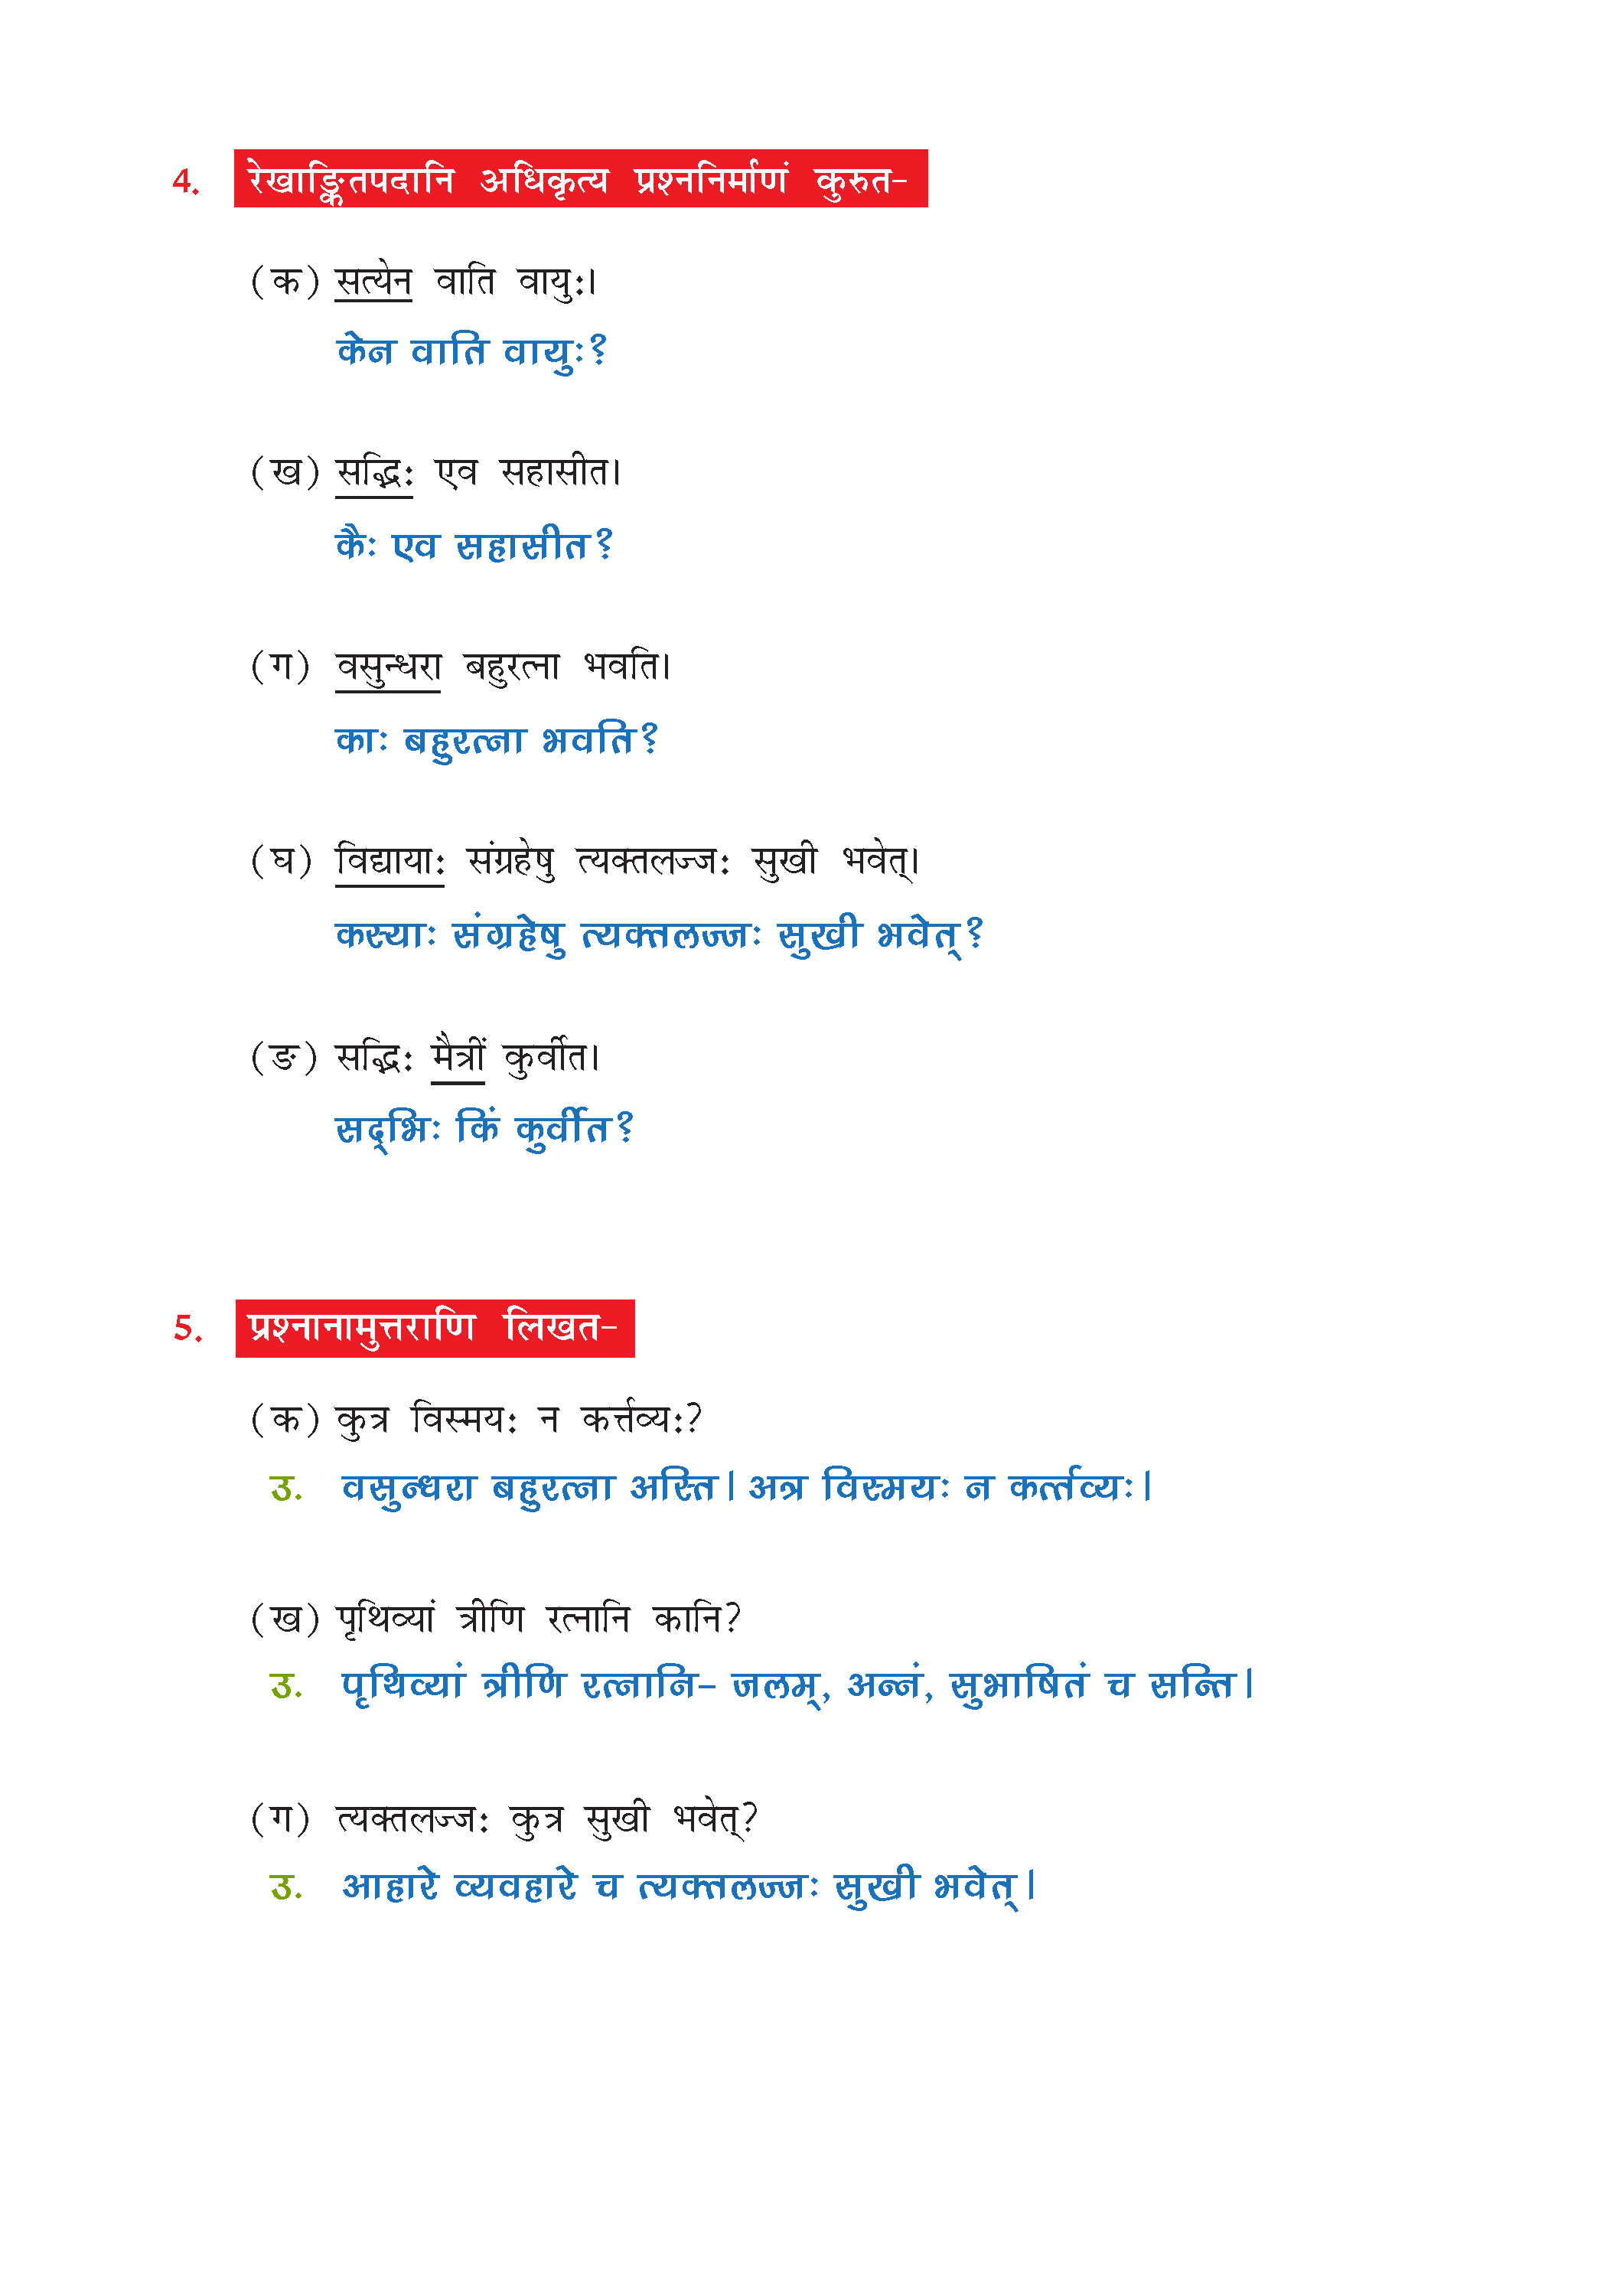 NCERT Solution For Class 7 Sanskrit Chapter 1 part 5